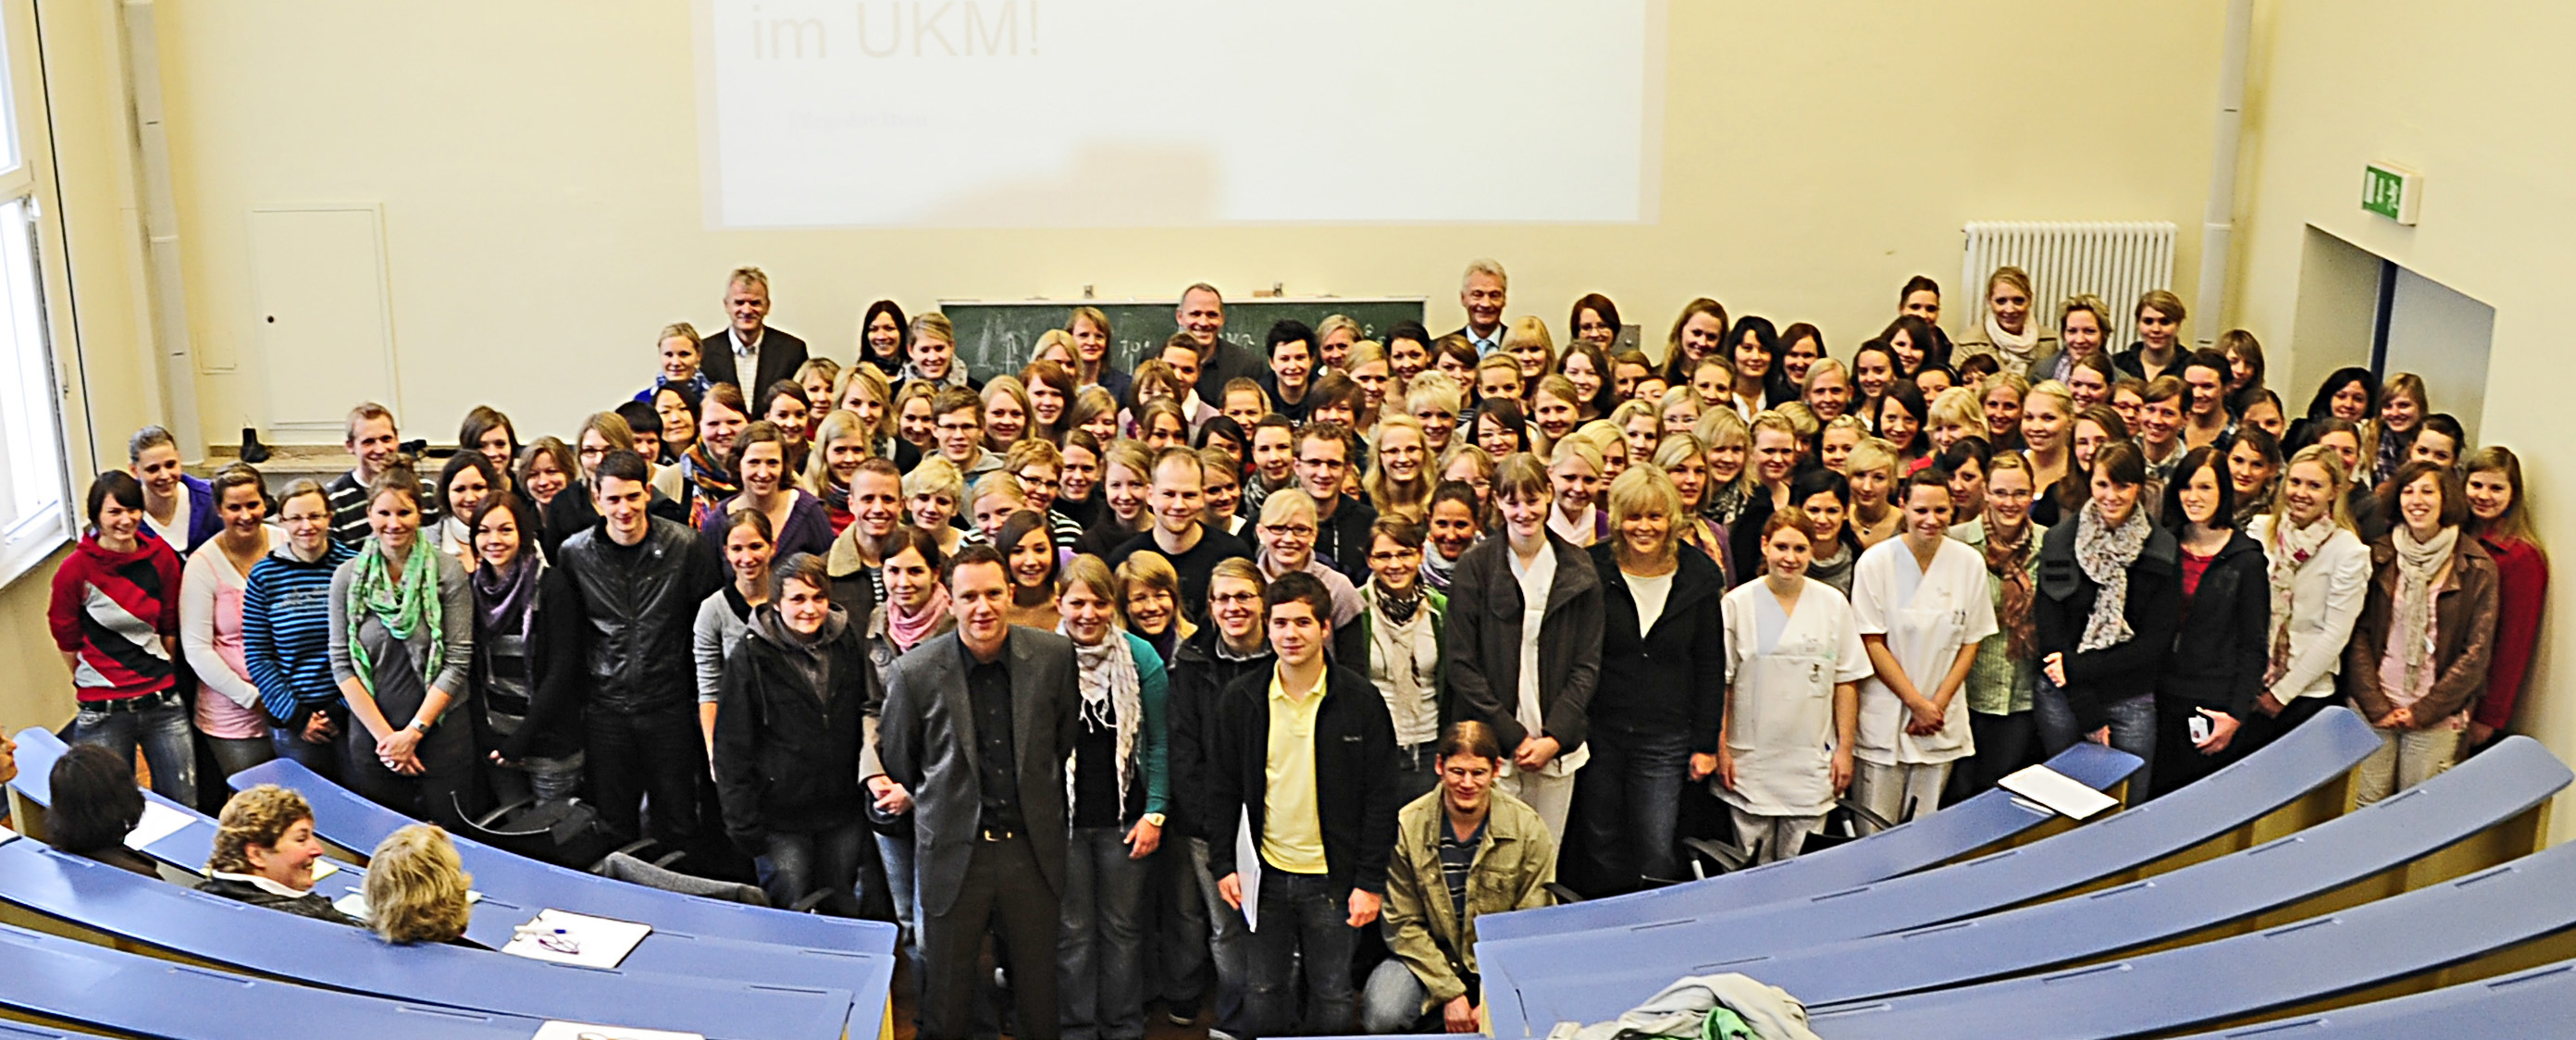 Am Freitag (1. Oktober) begrüßte UKM-Pflegedirektor Michael Rentmeister die neuen Mitarbeiterinnen und Mitarbeiter.